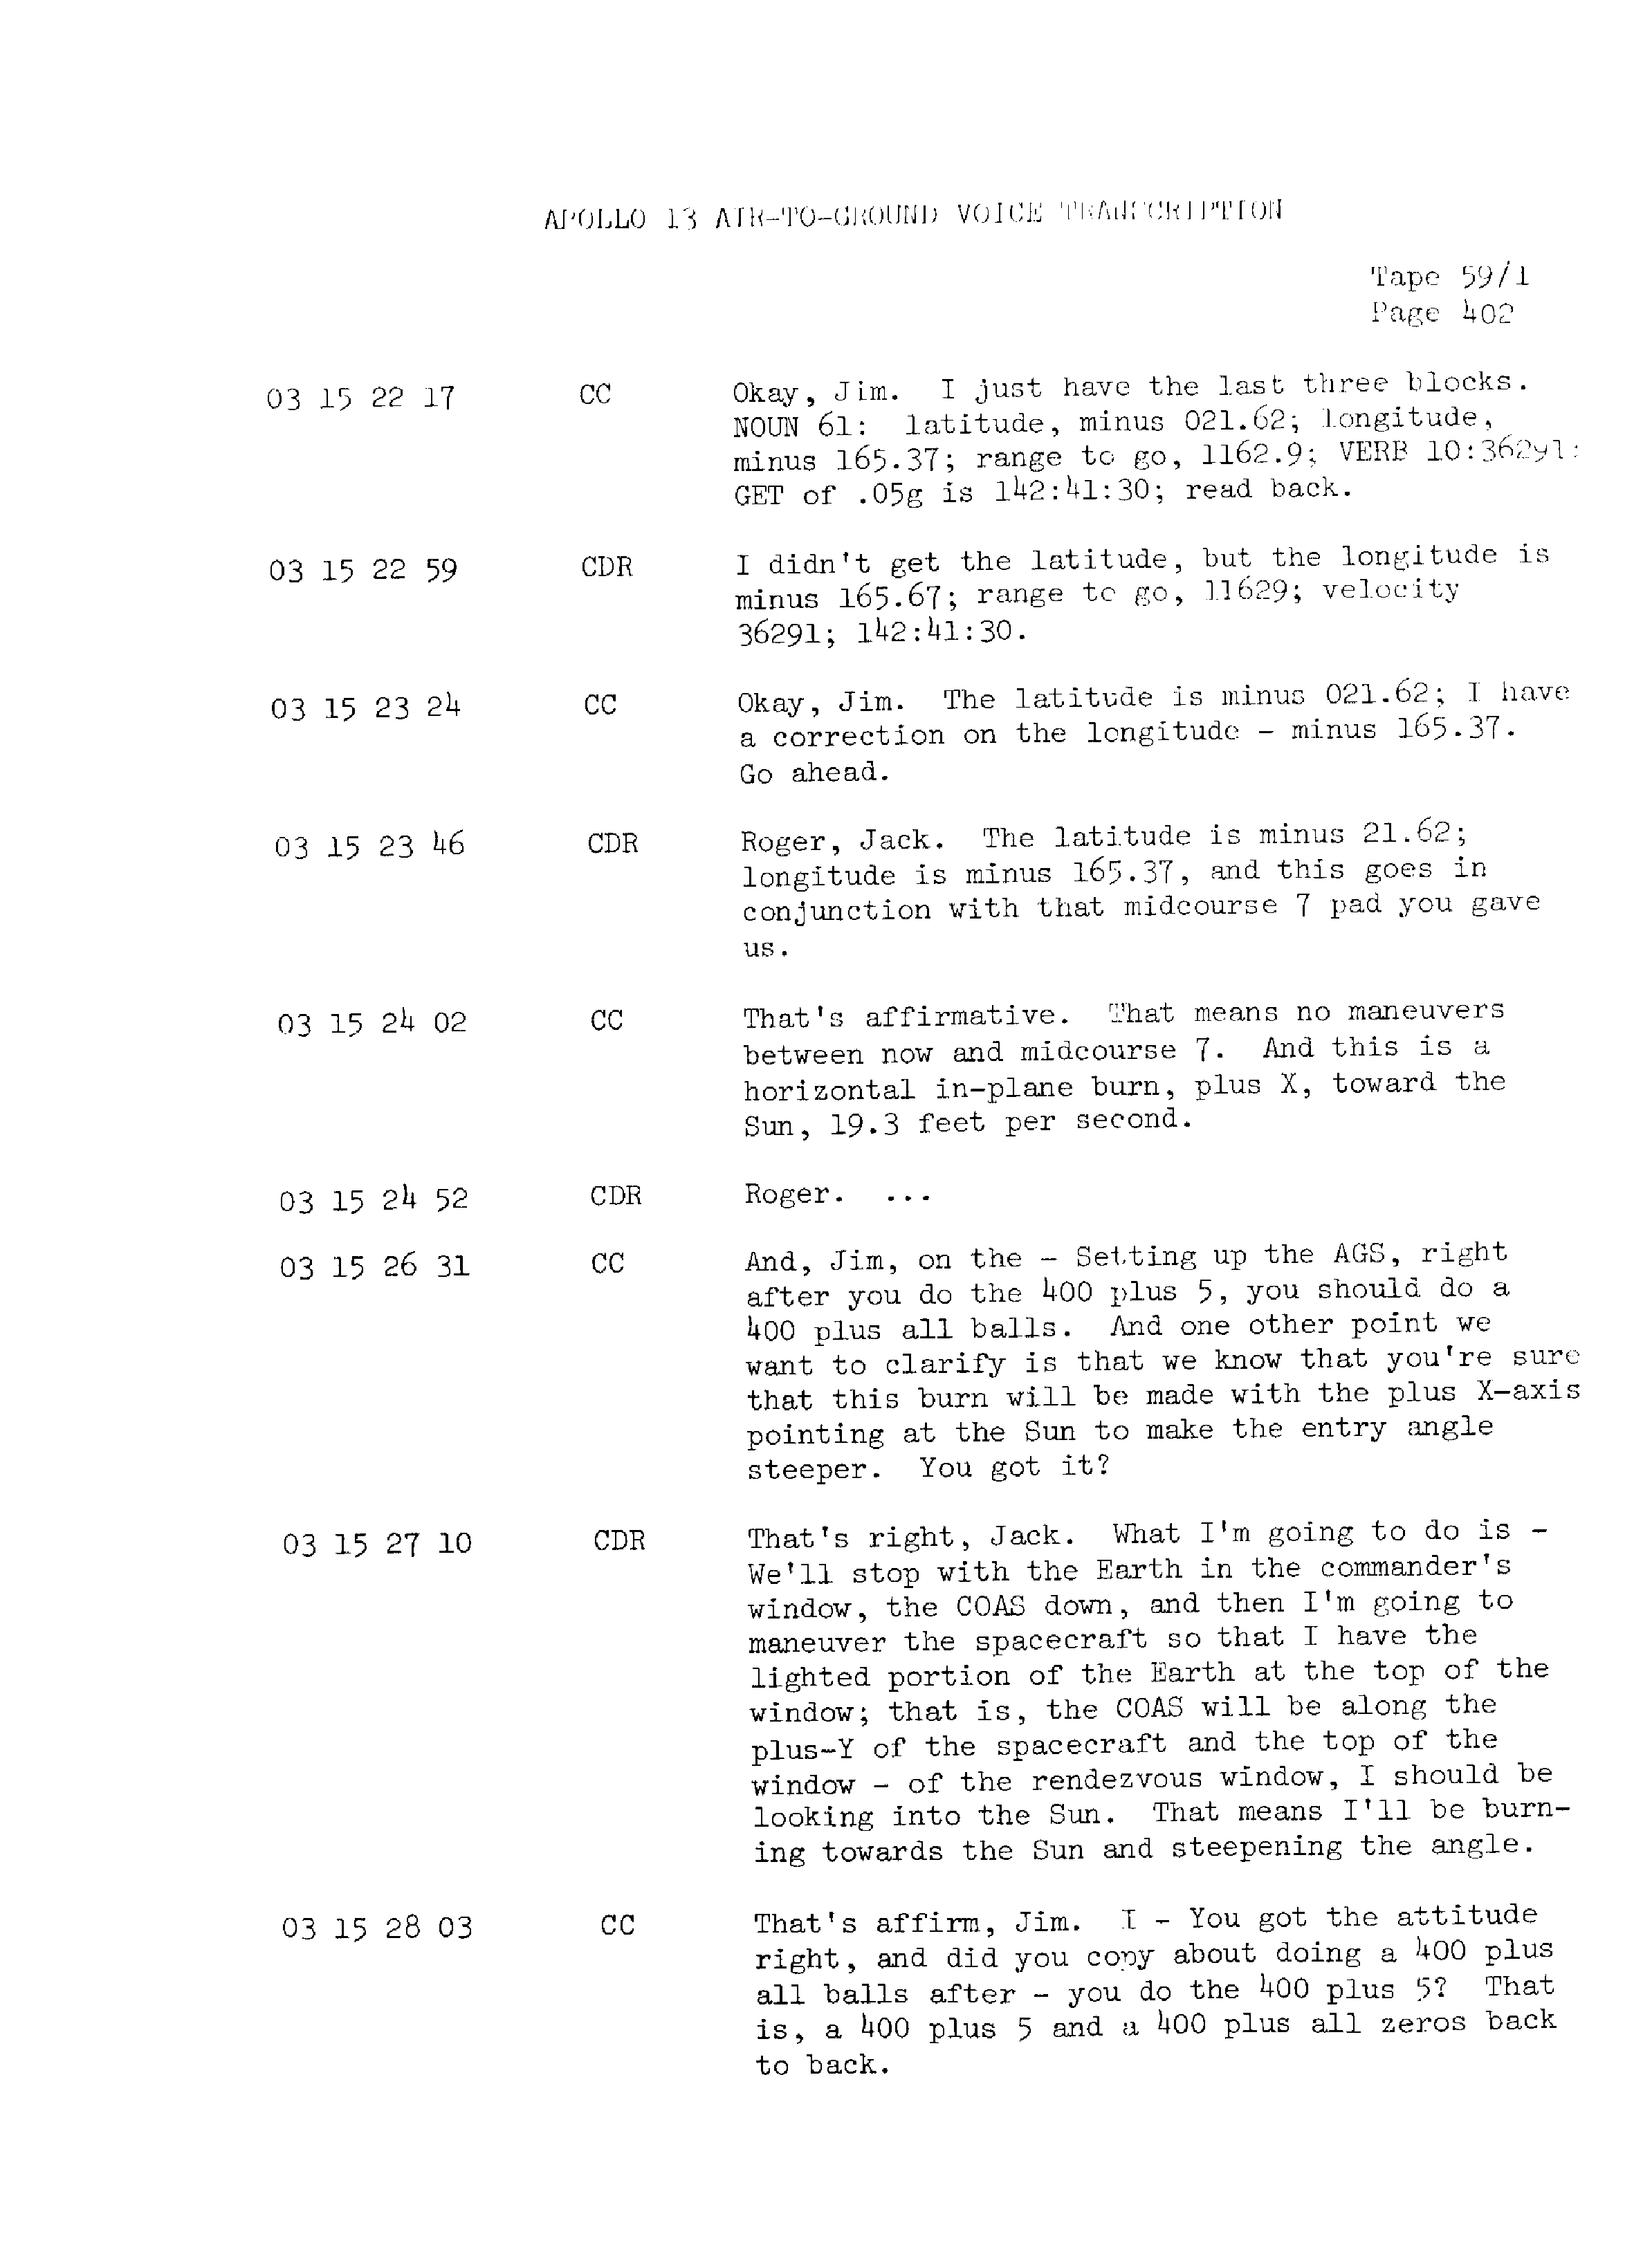 Page 409 of Apollo 13’s original transcript